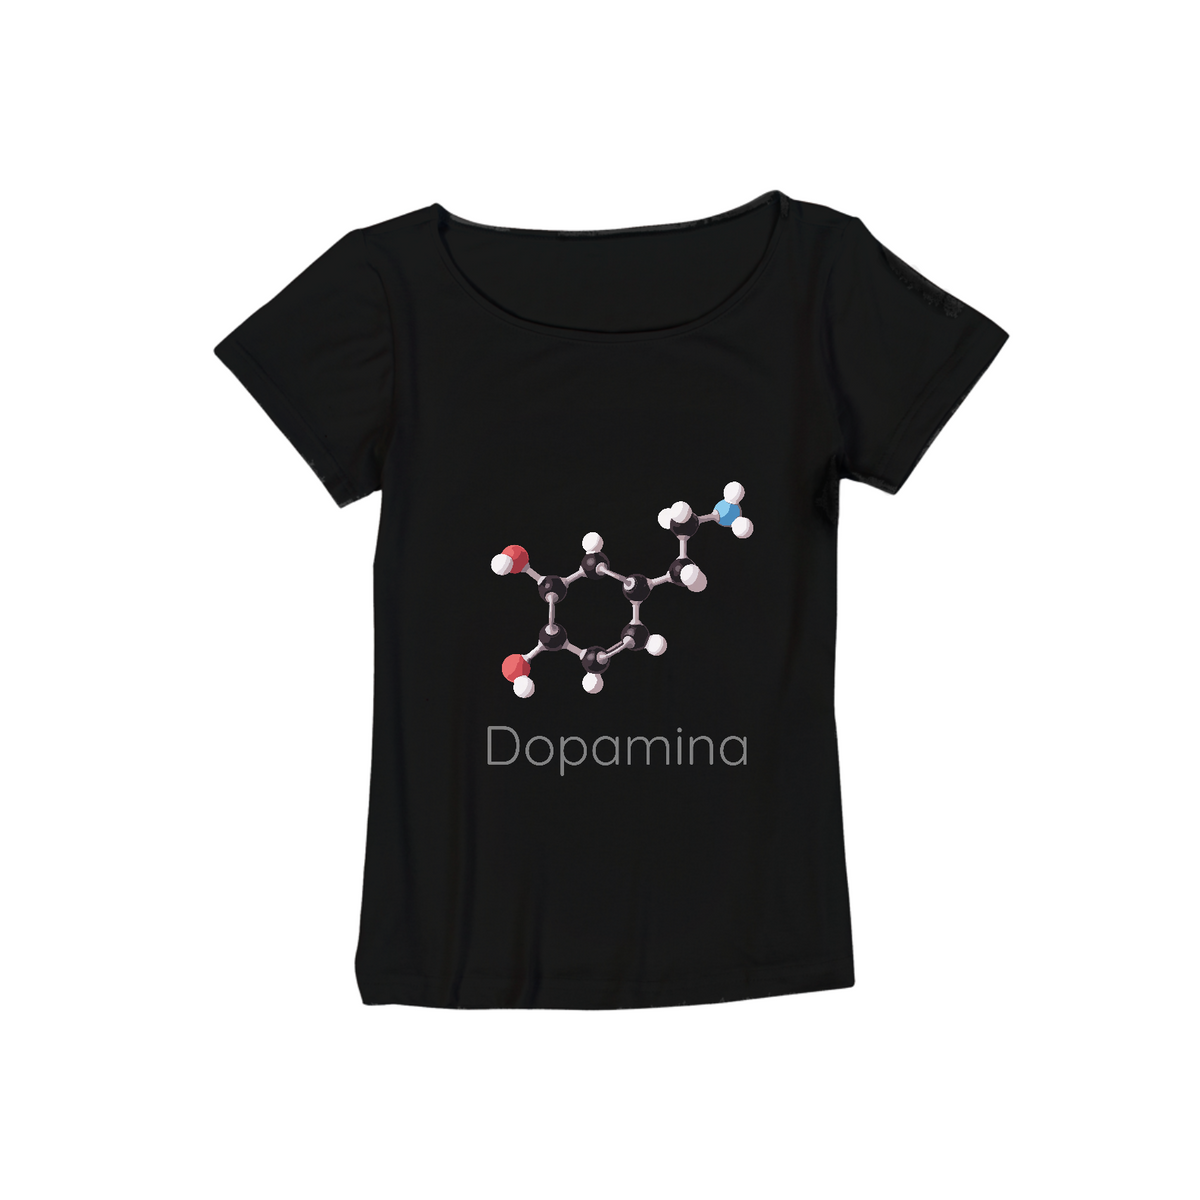 Nome do produto: Camiseta viscolycra Dopamina